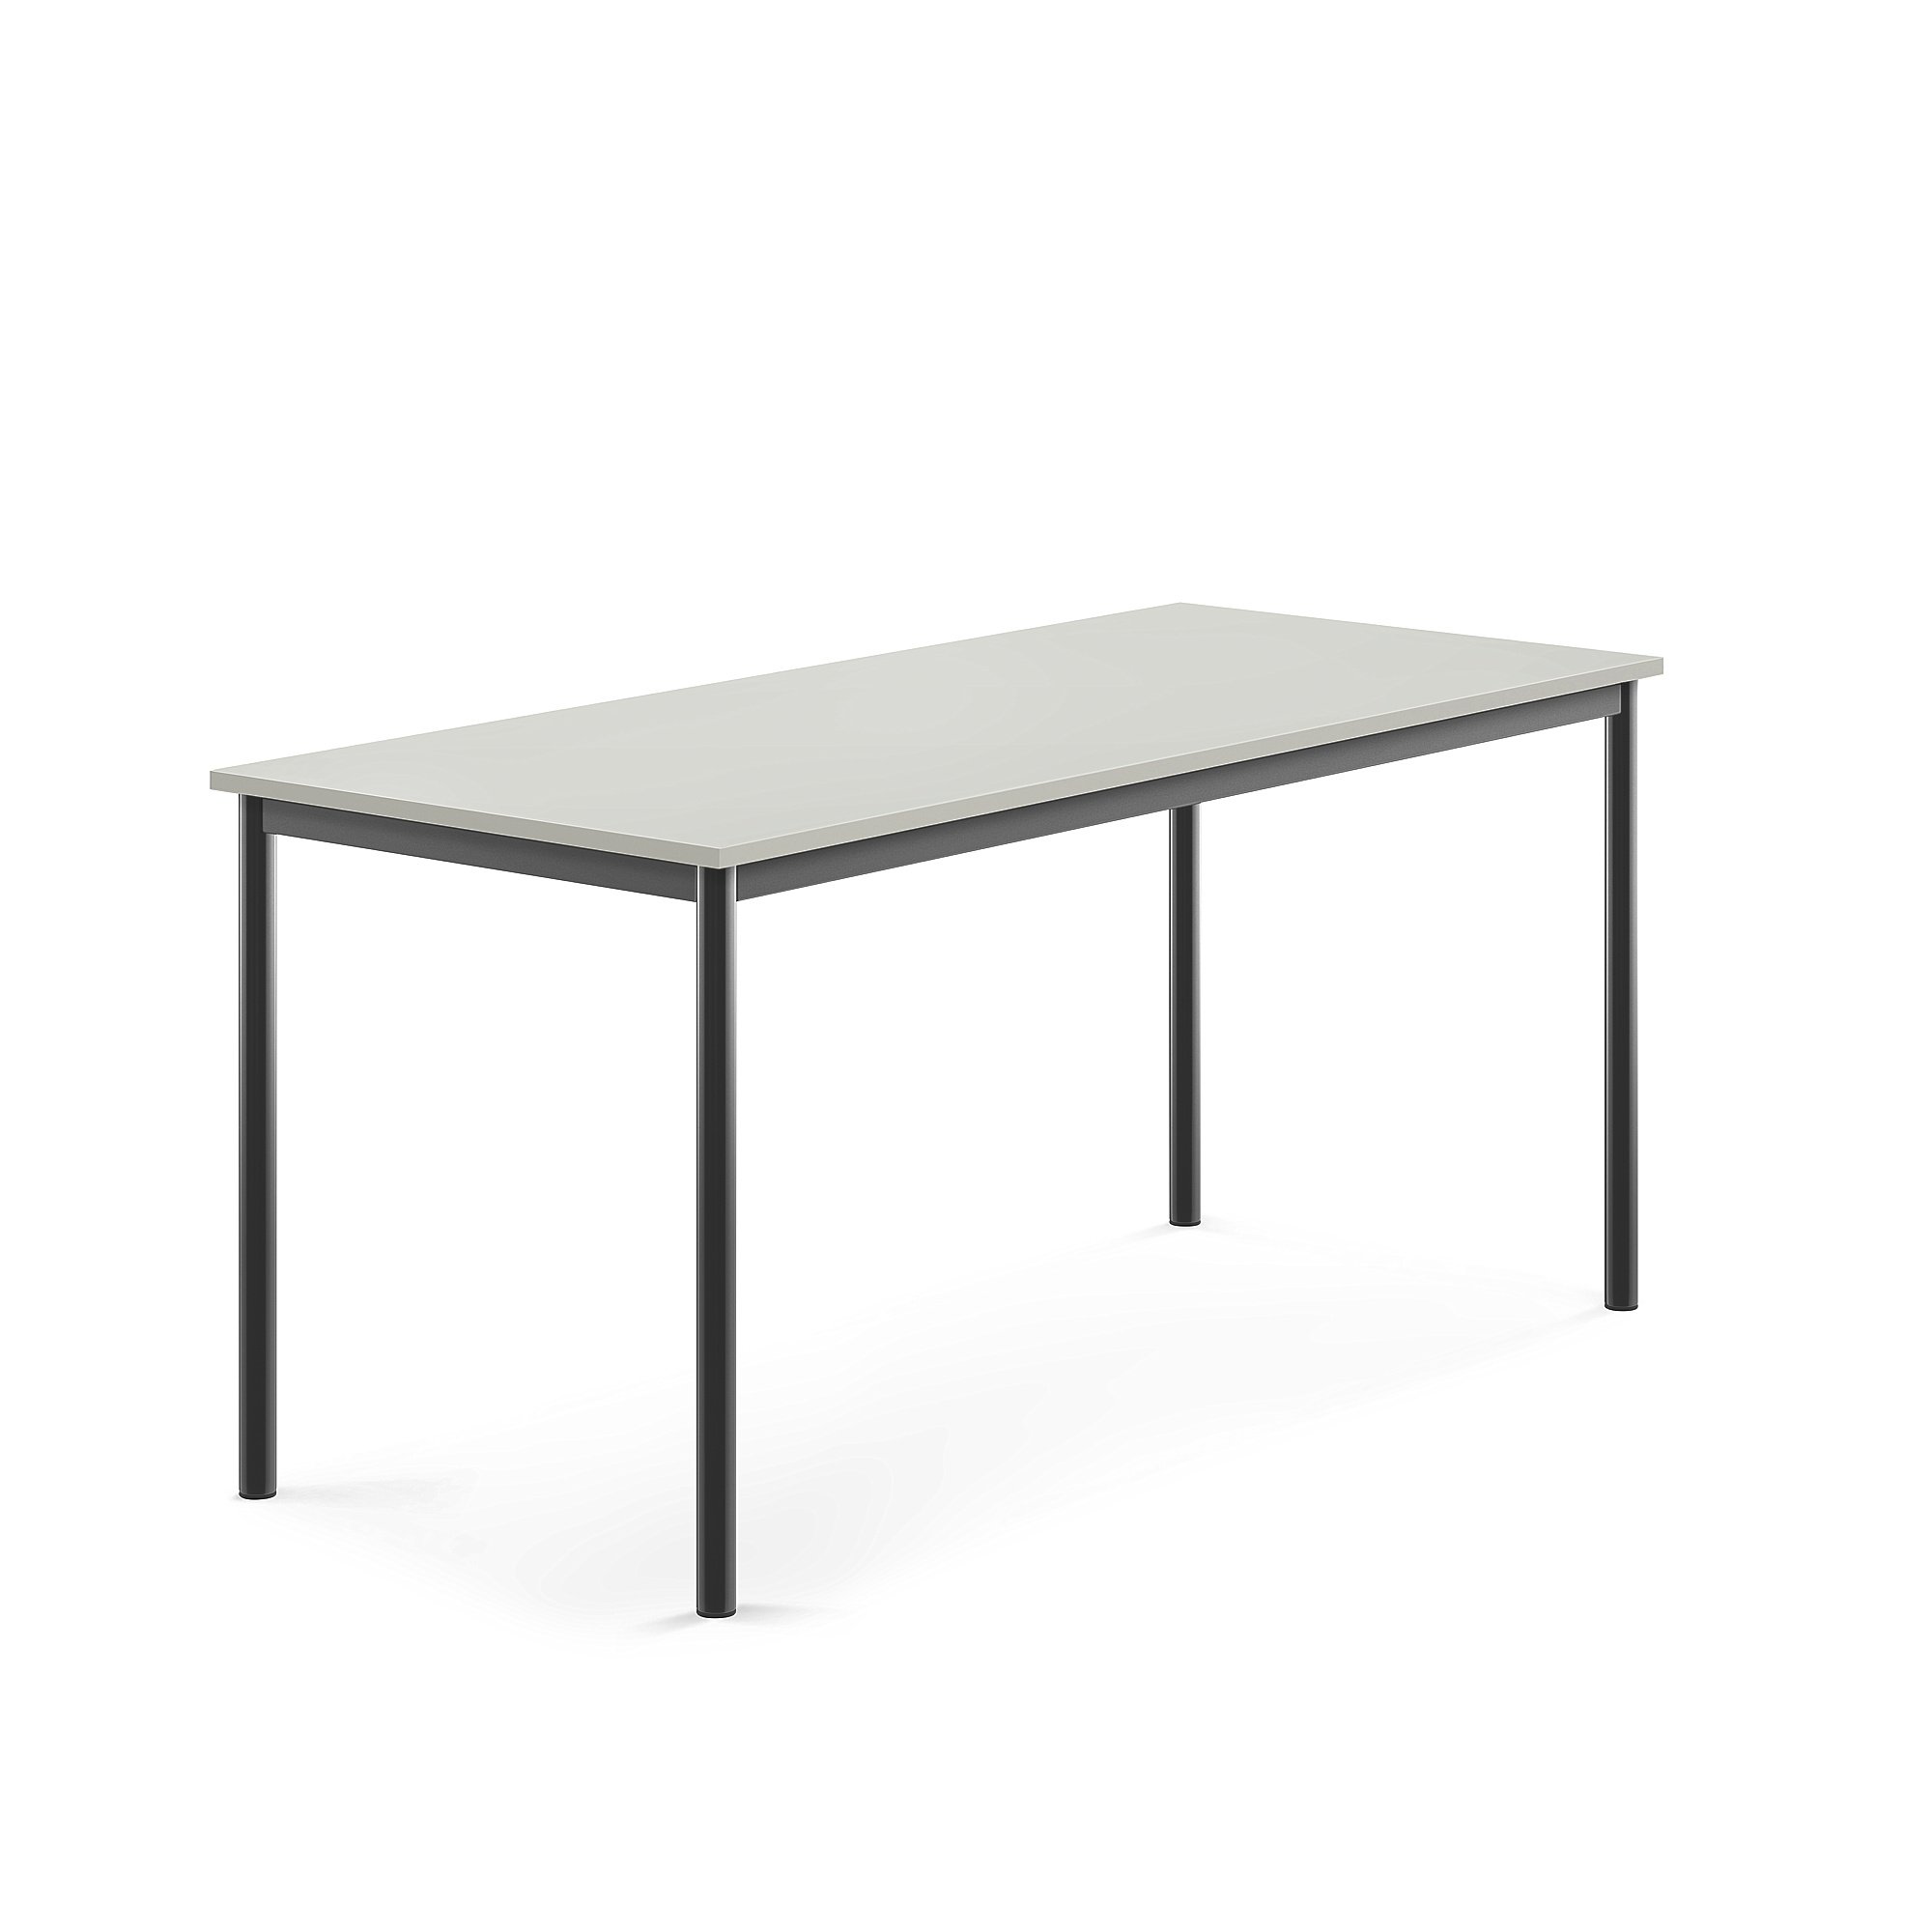 Stůl BORÅS, 1600x700x720 mm, antracitově šedé nohy, HPL deska, šedá